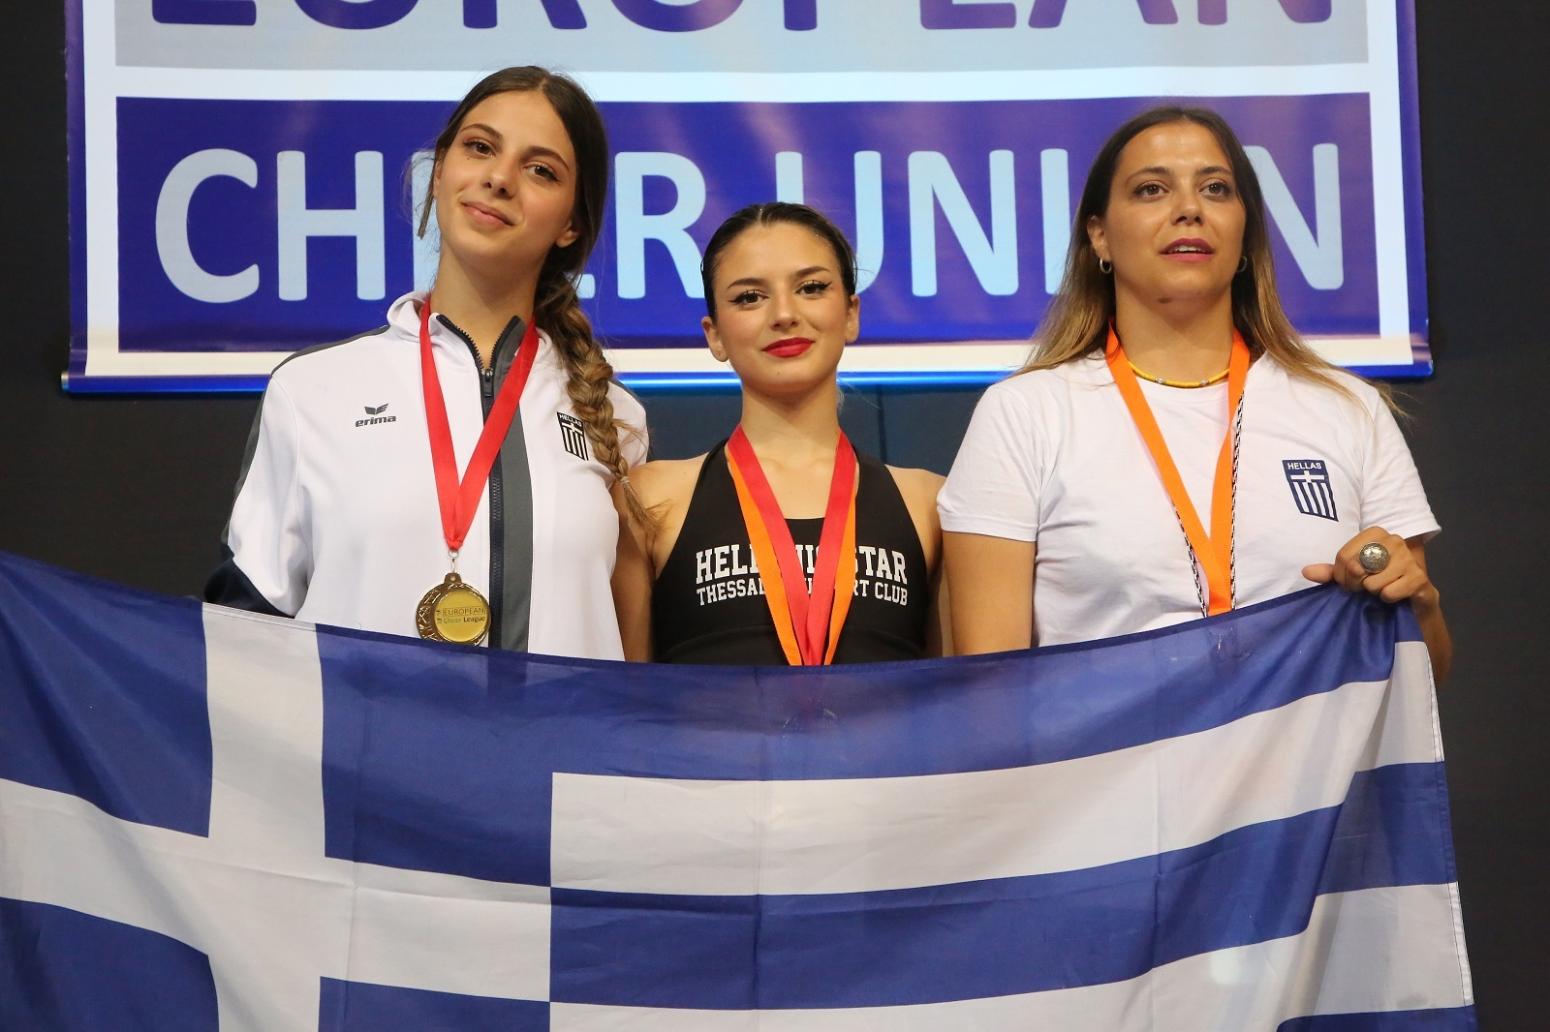 Ευρωπαϊκό Πρωτάθλημα Cheerleading: 4 ελληνικά μετάλλια